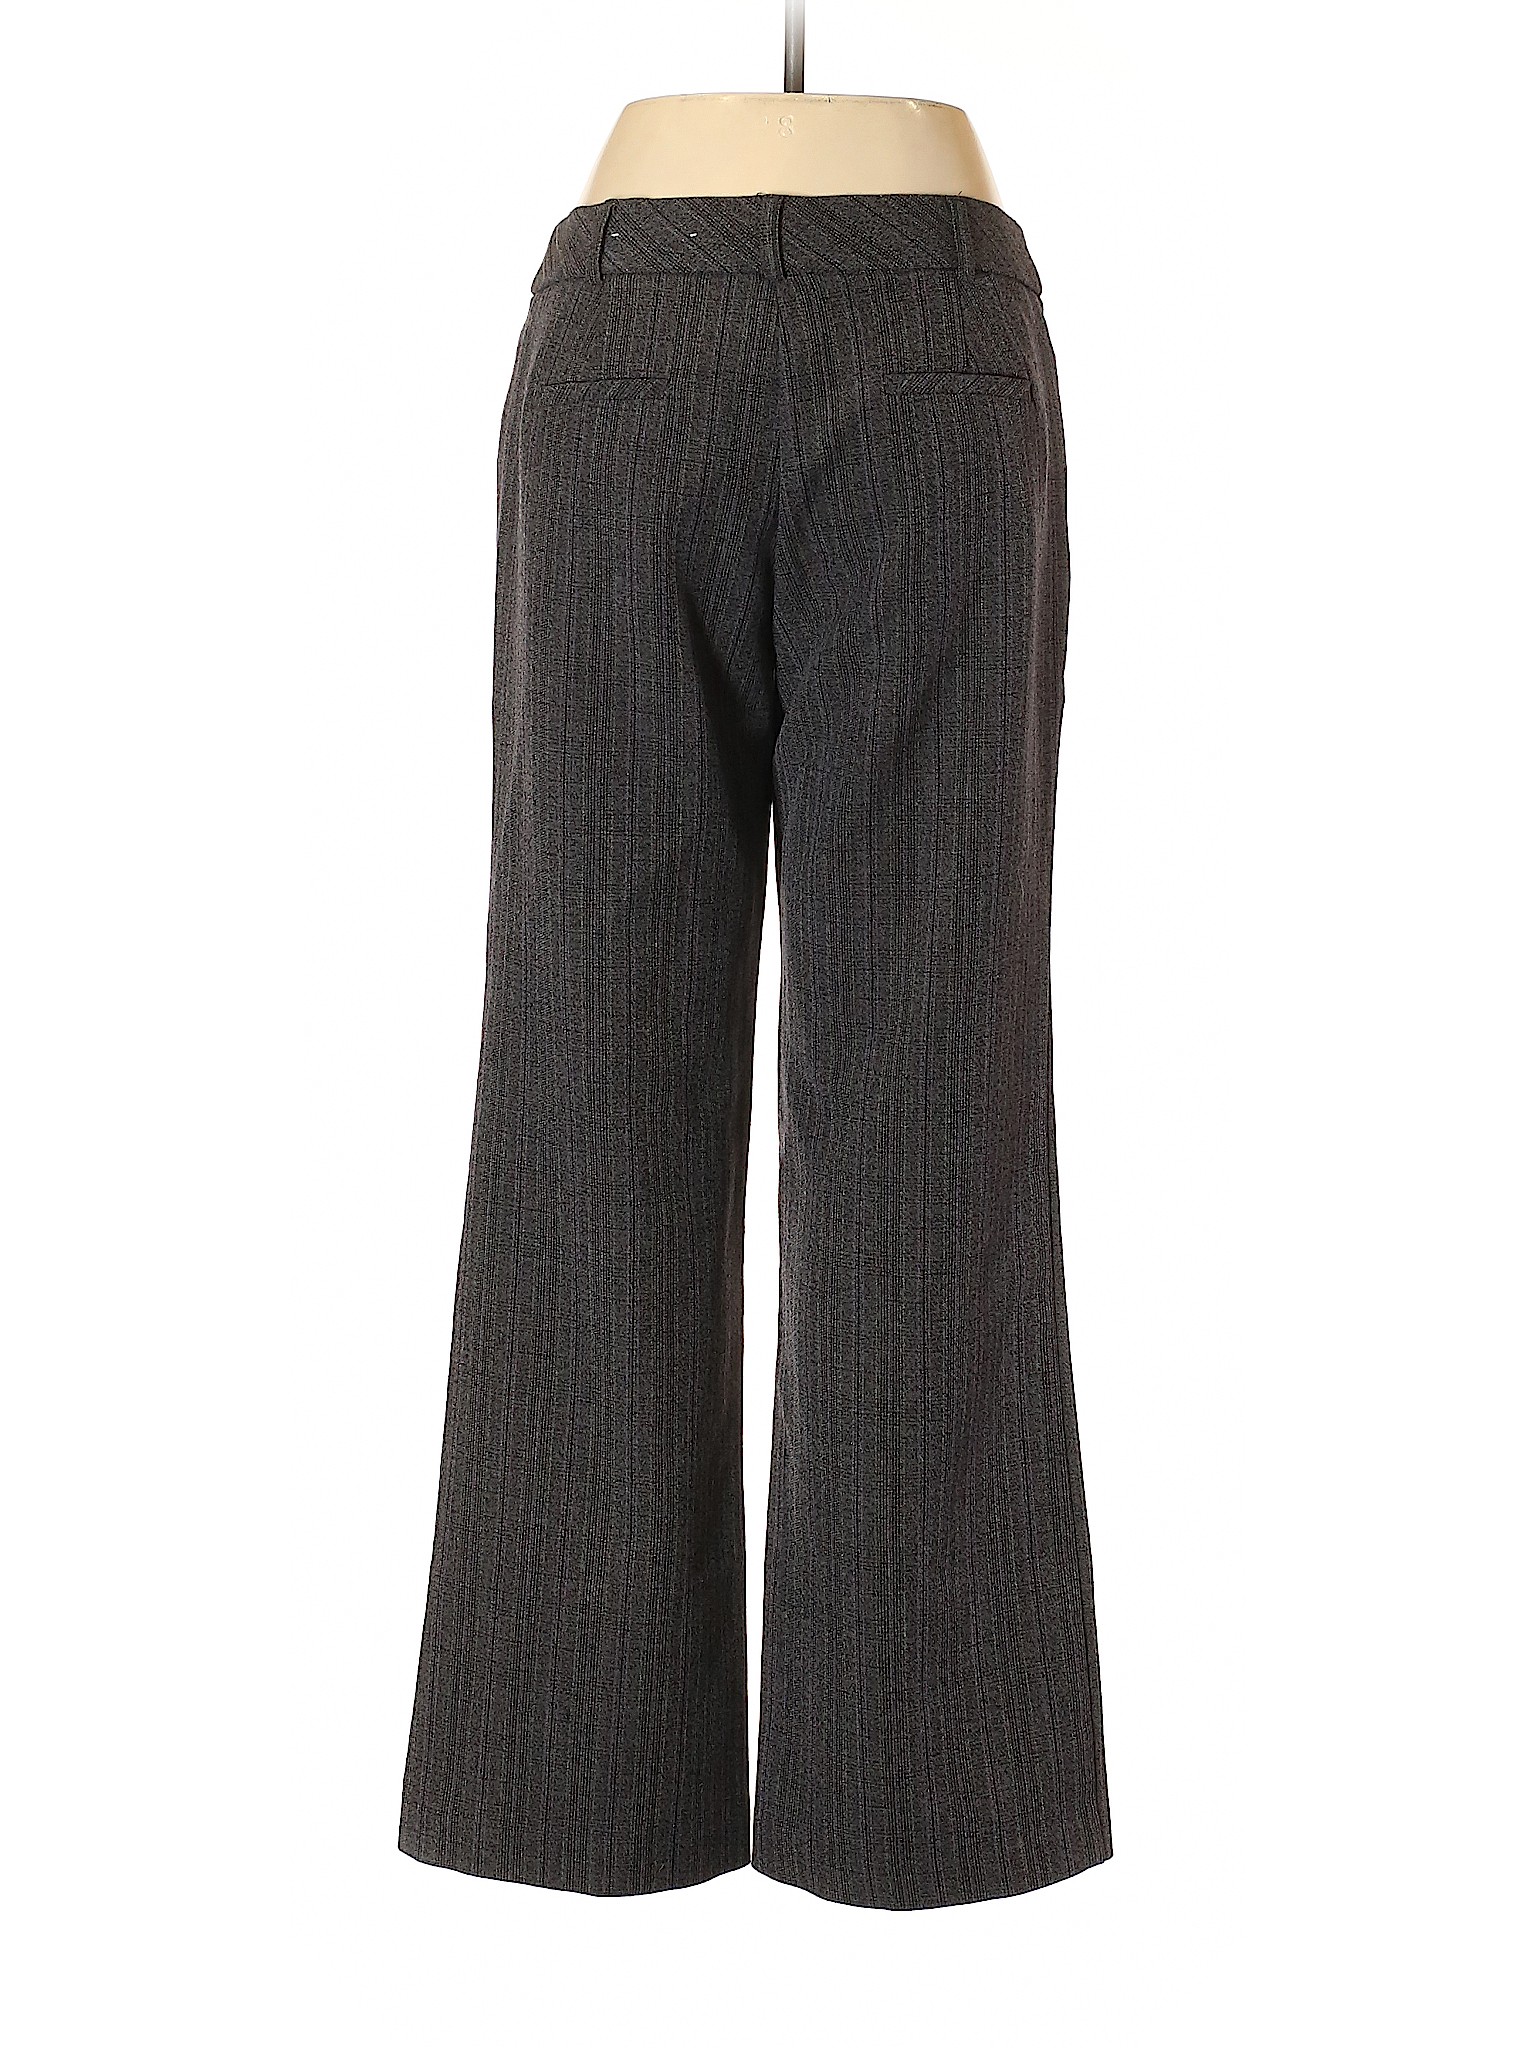 DressBarn Women Gray Dress Pants 6 | eBay